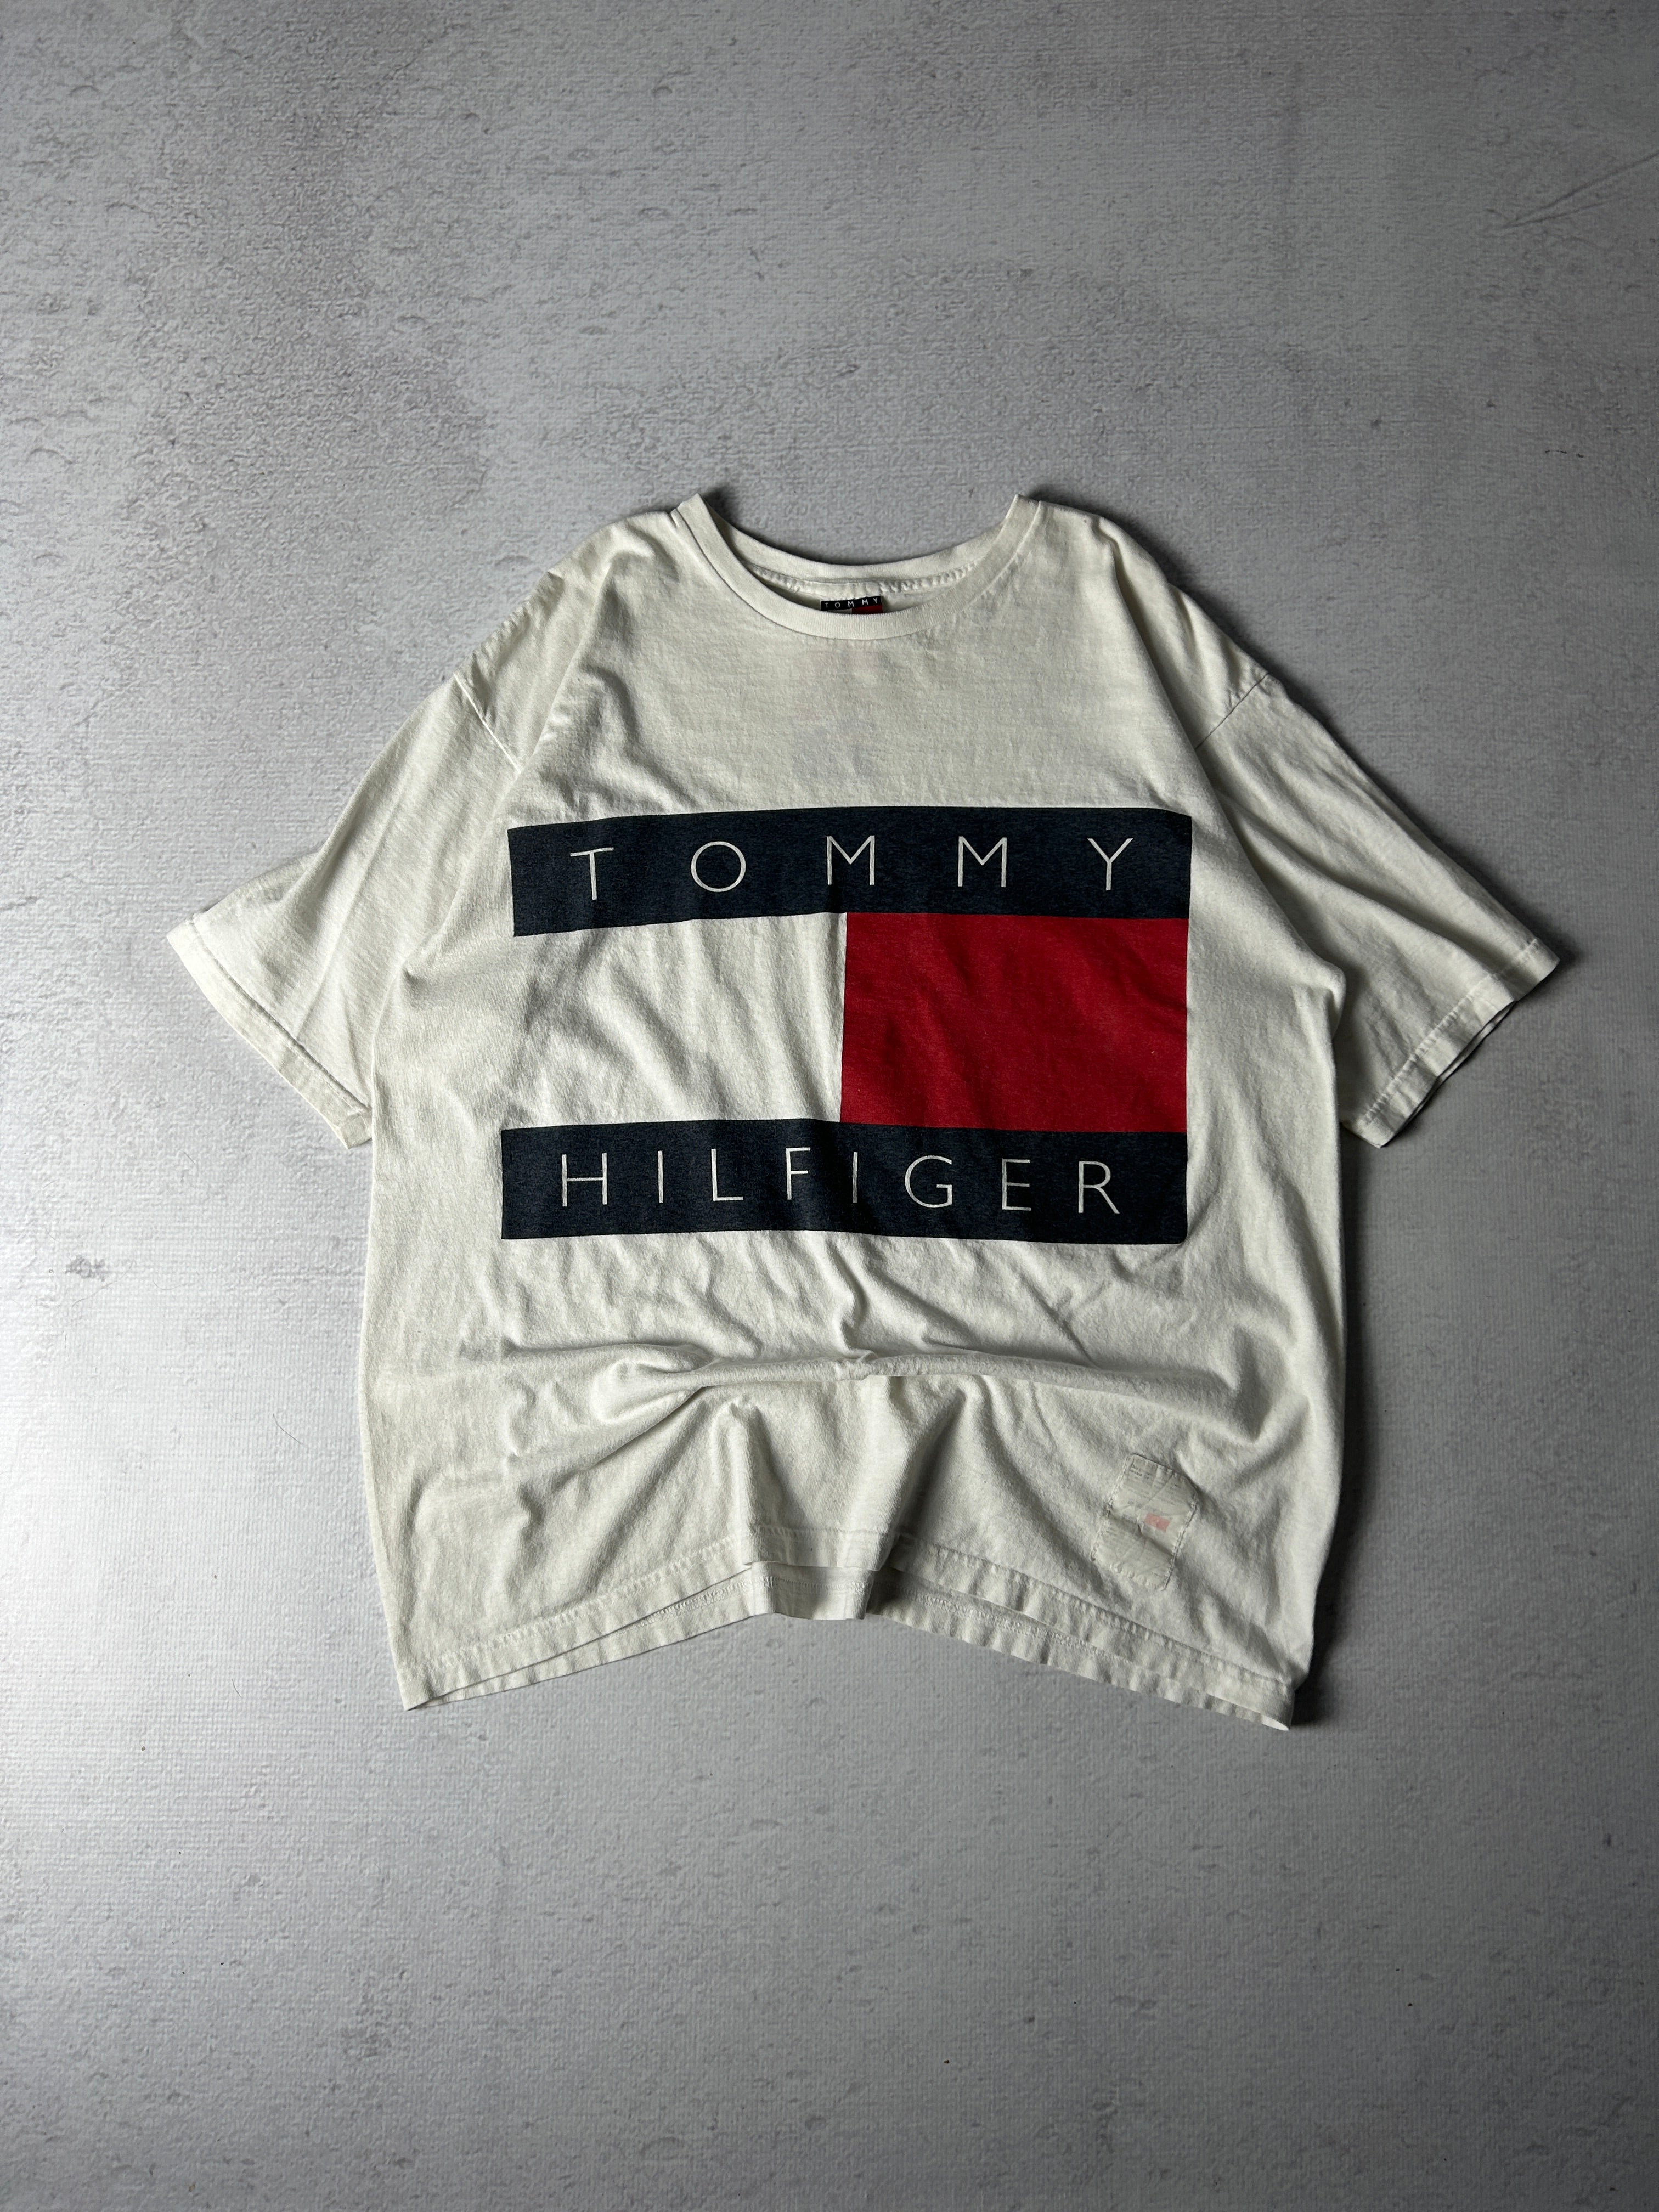 Vintage Tommy Hilfiger T-Shirt - Men's Large